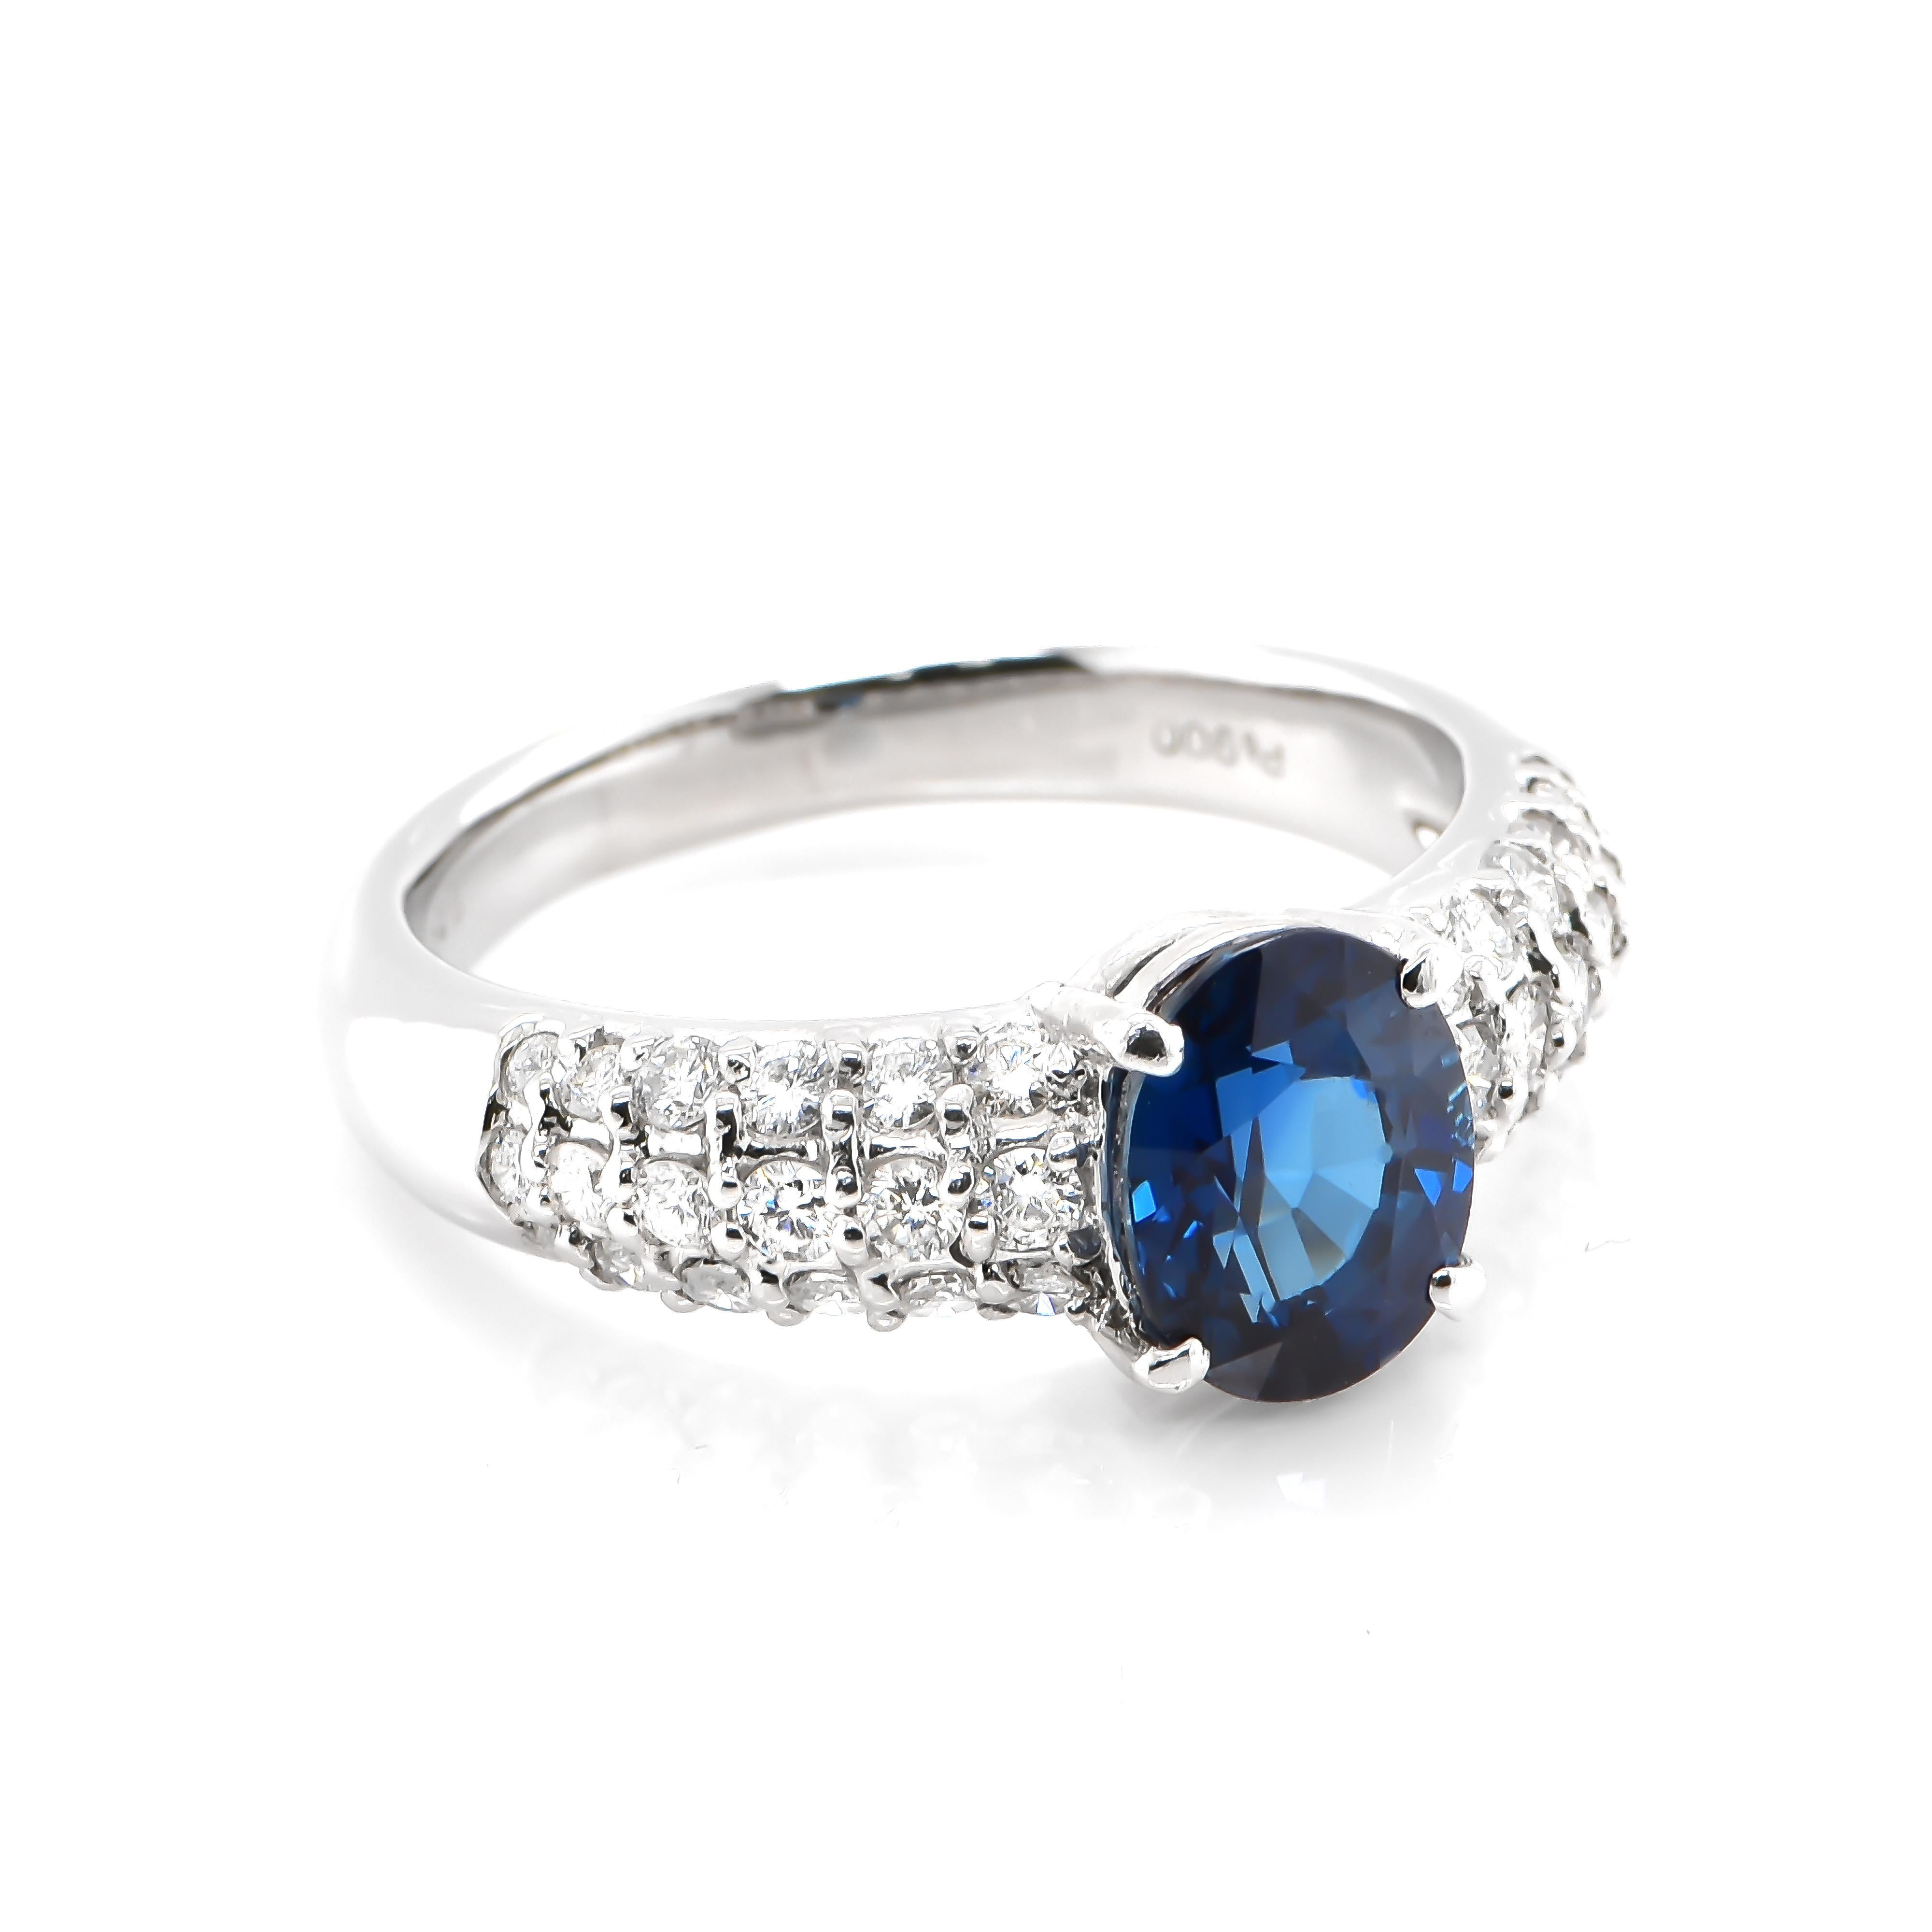 Ein wunderschöner Ring mit 2,25 Karat natürlichem königsblauem Saphir und 0,69 Karat Diamant-Akzenten in Platin gefasst. Saphire haben eine außergewöhnliche Haltbarkeit - sie zeichnen sich durch Härte, Zähigkeit und Beständigkeit aus, was sie zu